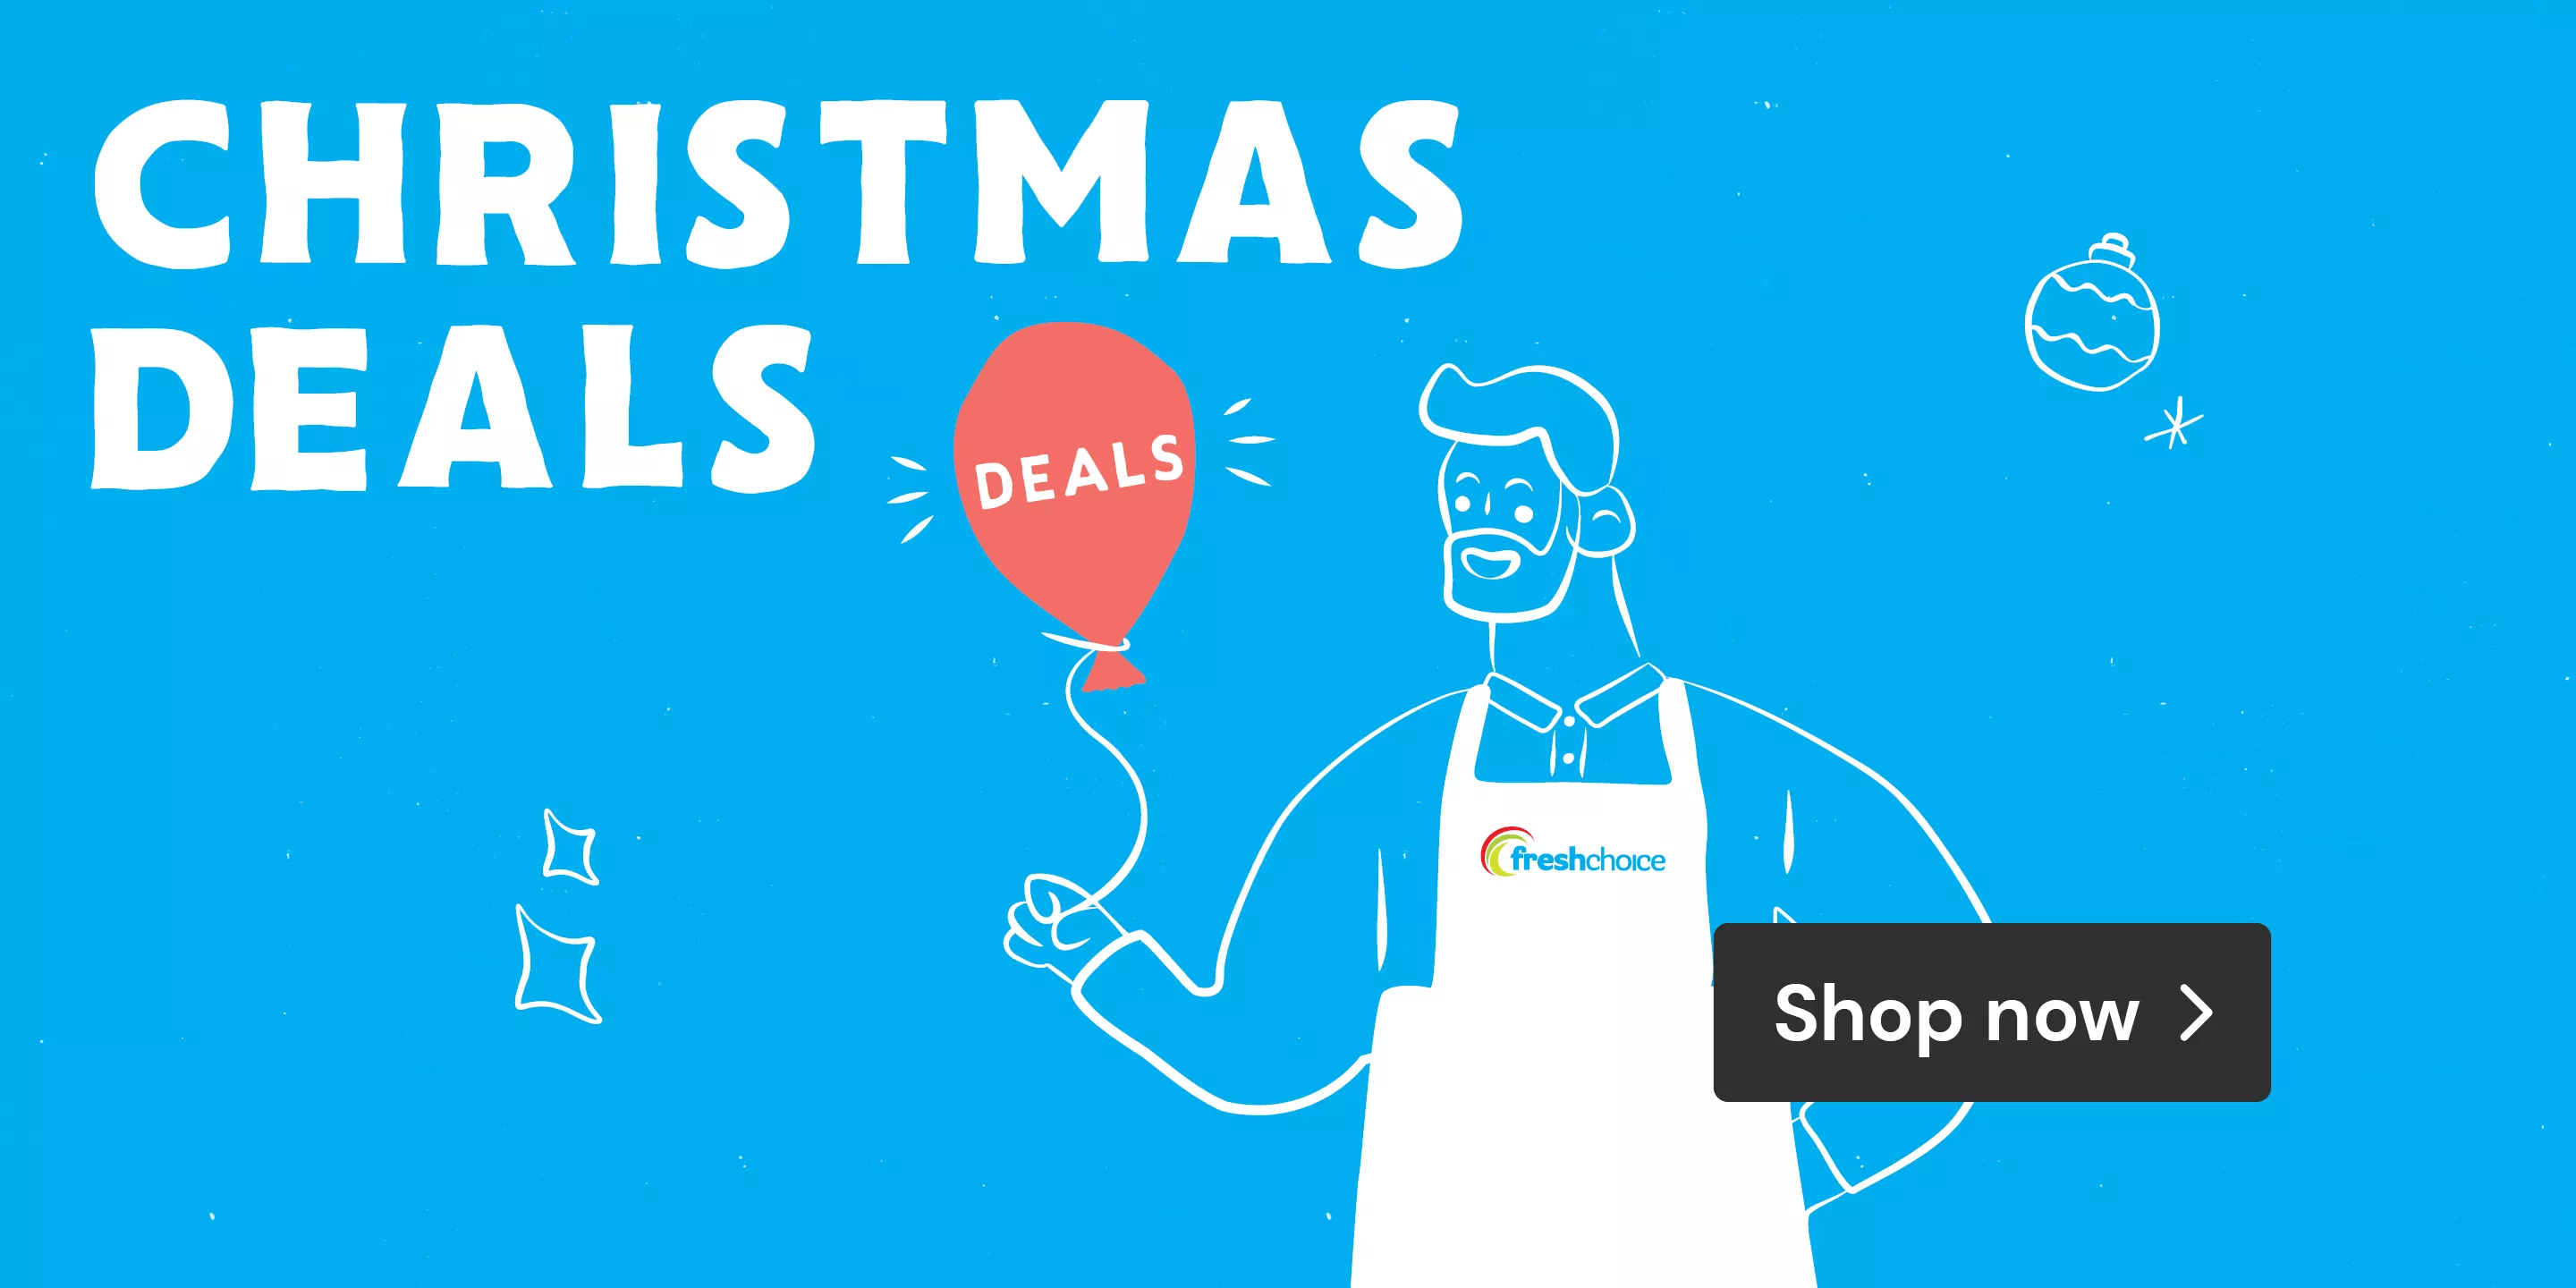 Christmas Deals Shop now